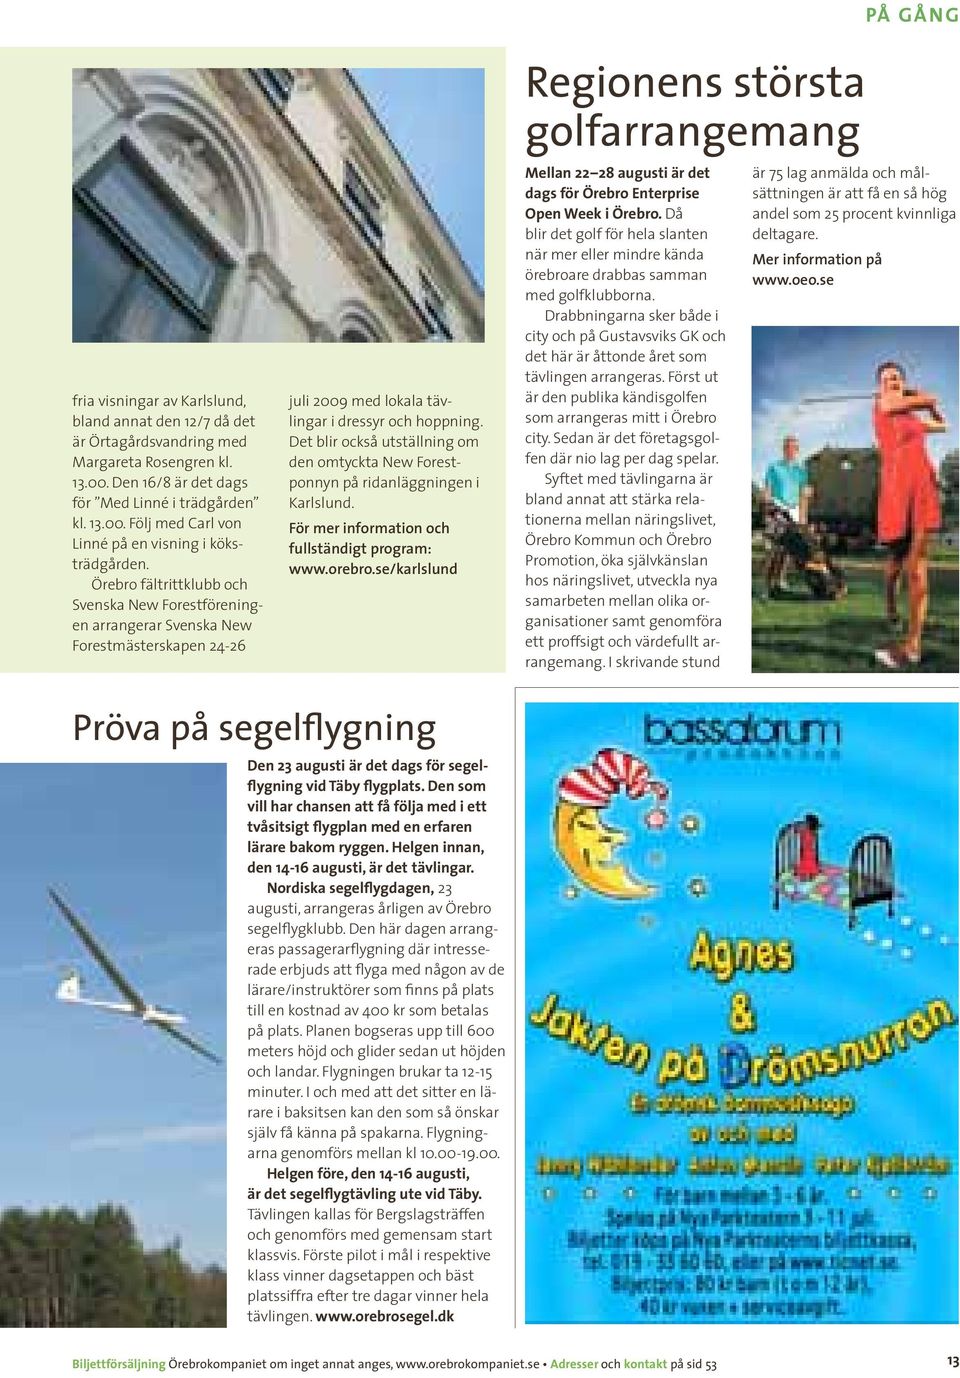 Det blir också utställning om den omtyckta New Forestponnyn på ridanläggningen i Karlslund. För mer information och fullständigt program: www.orebro.